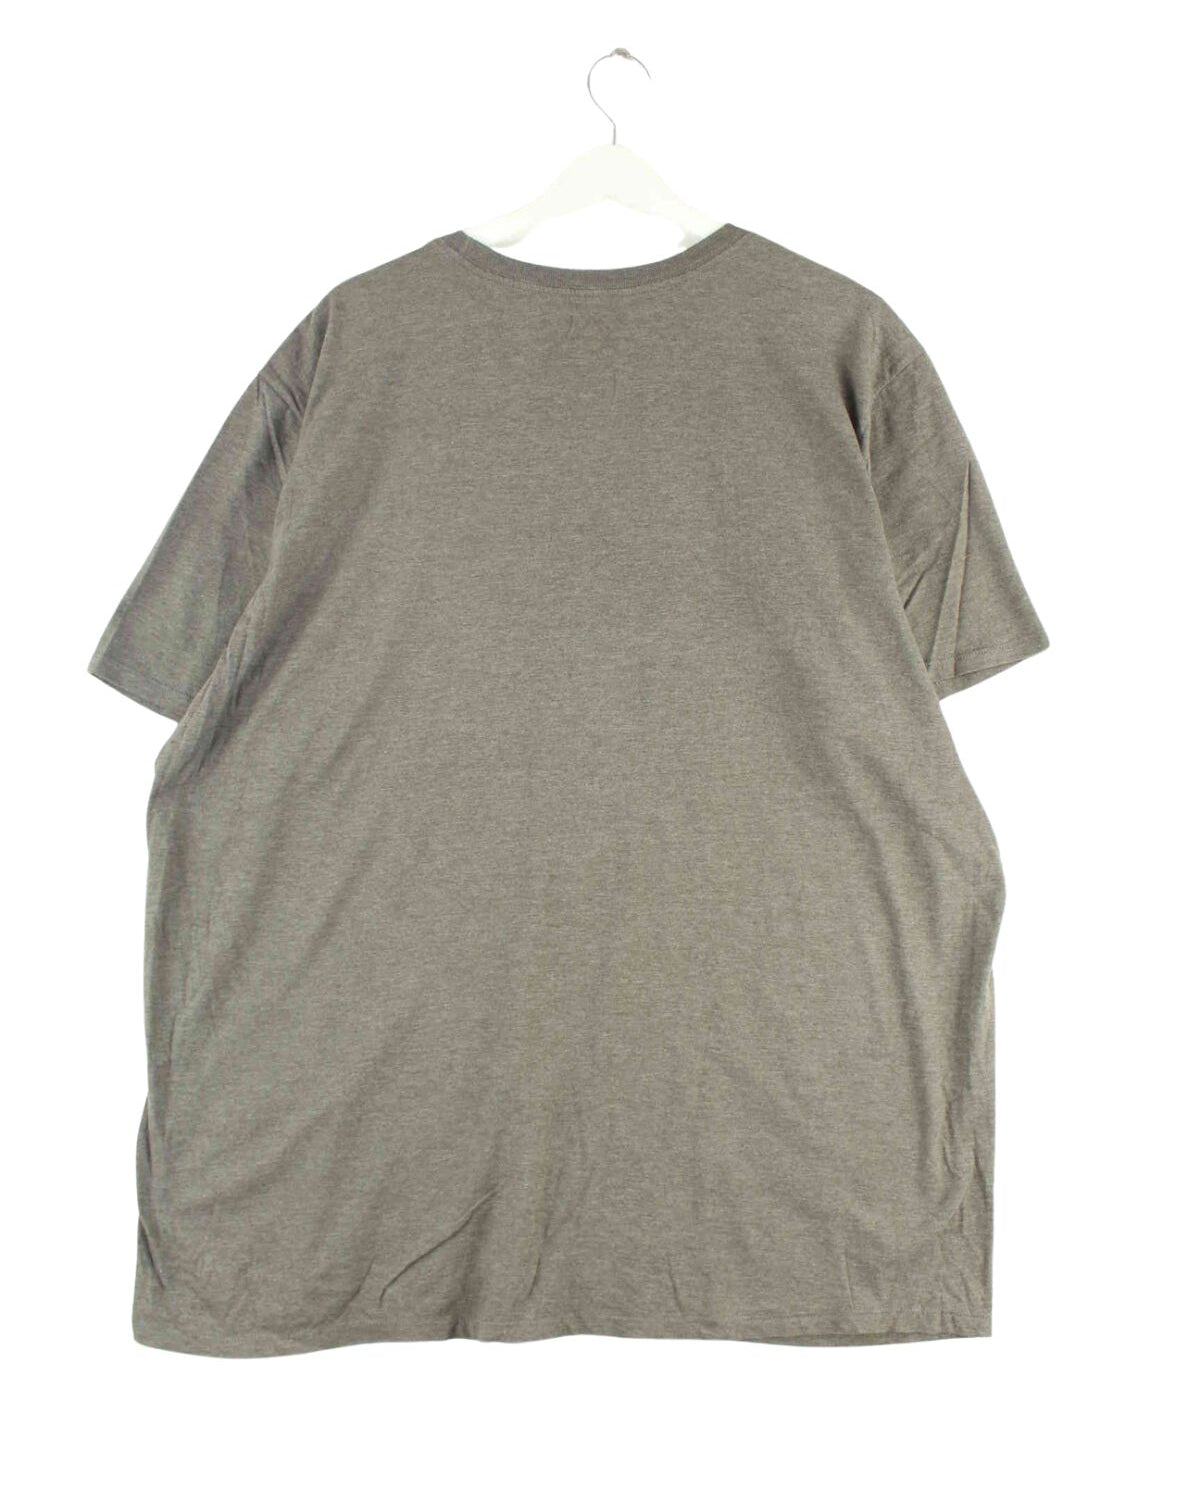 Nike Print T-Shirt Grau XXL (back image)